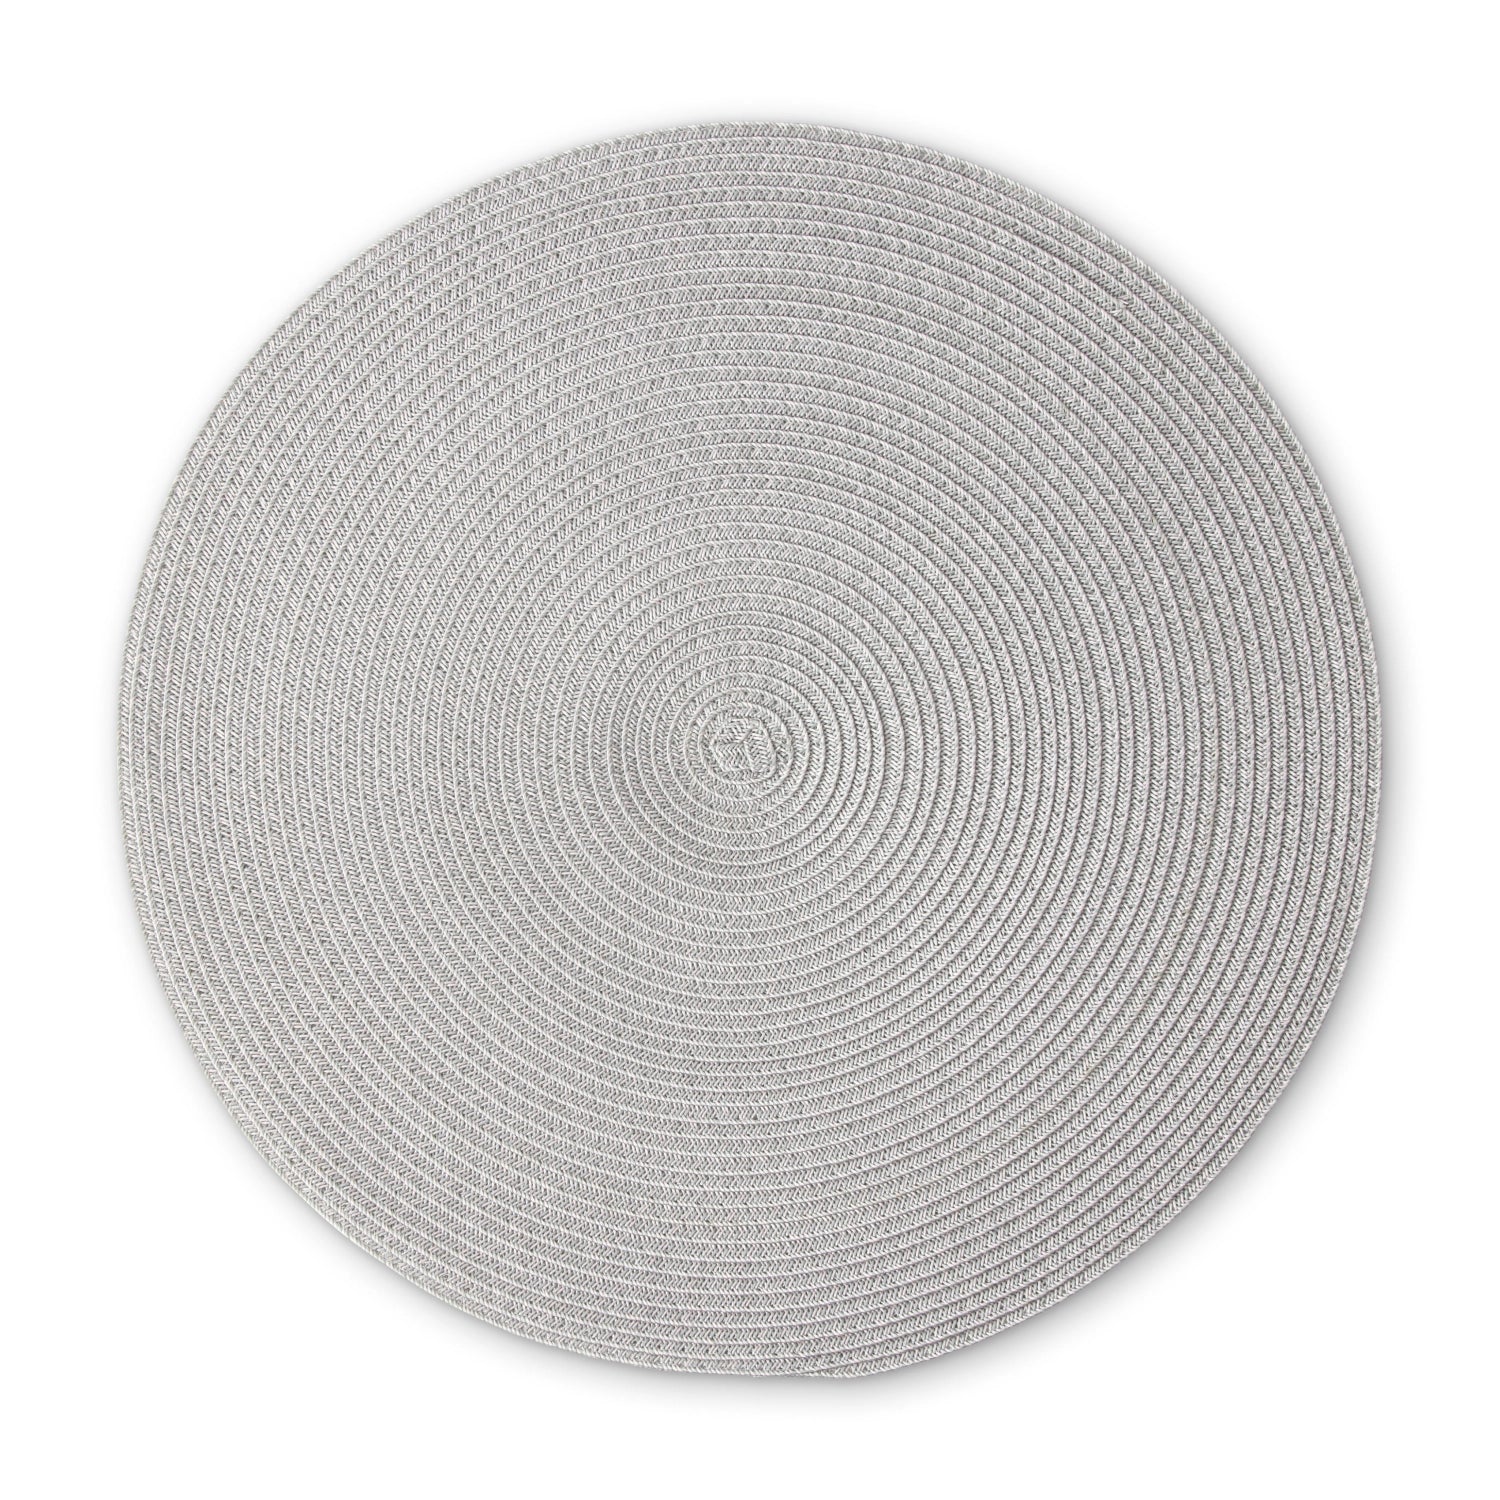 Tischset rund, hellgrau, 38 cm - KAQTU Design